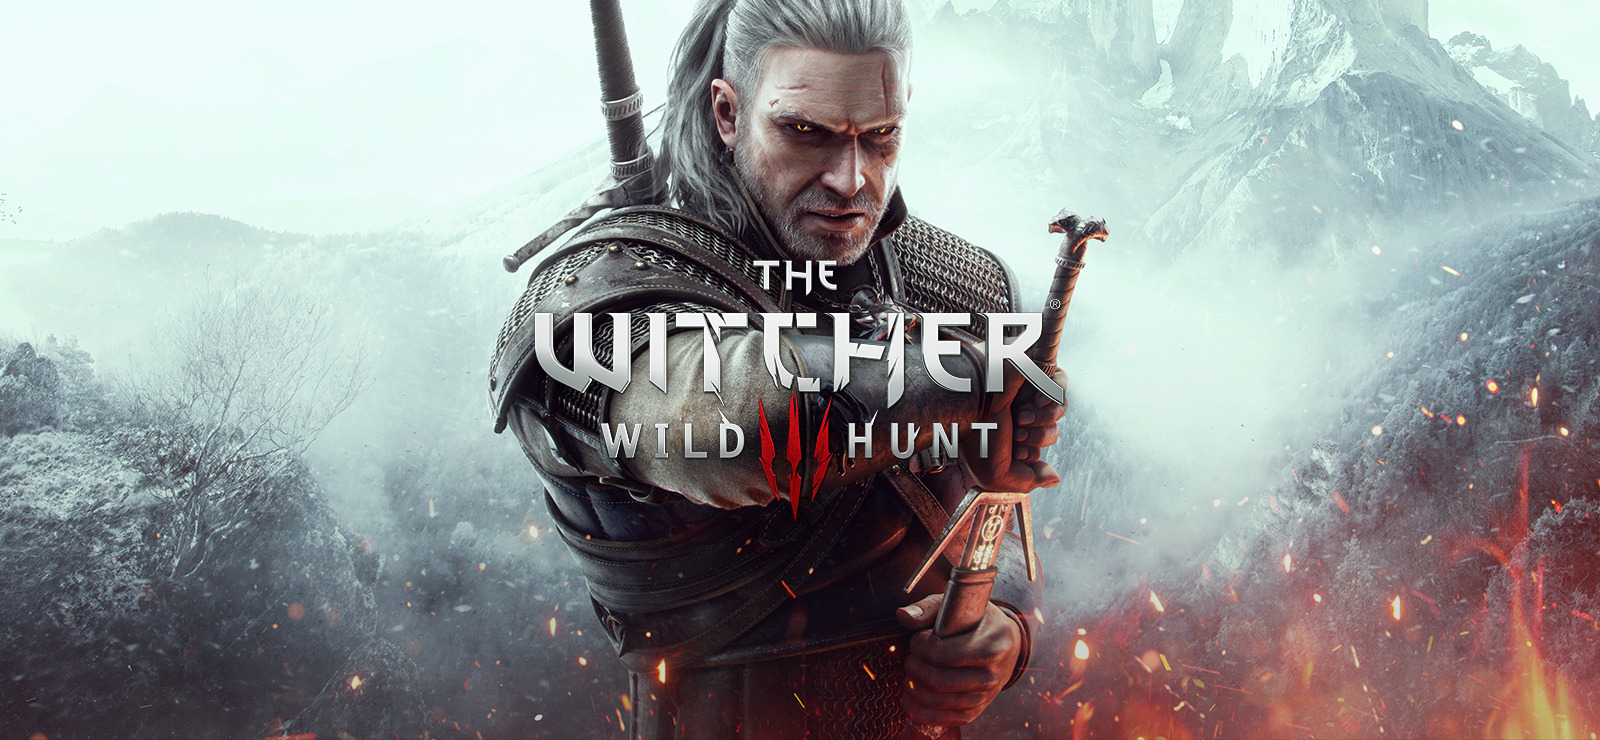 CD Projekt Red представила официальный инструмент для моддинга The Witcher 3: Wild Hunt, тестирование проходит в Steam